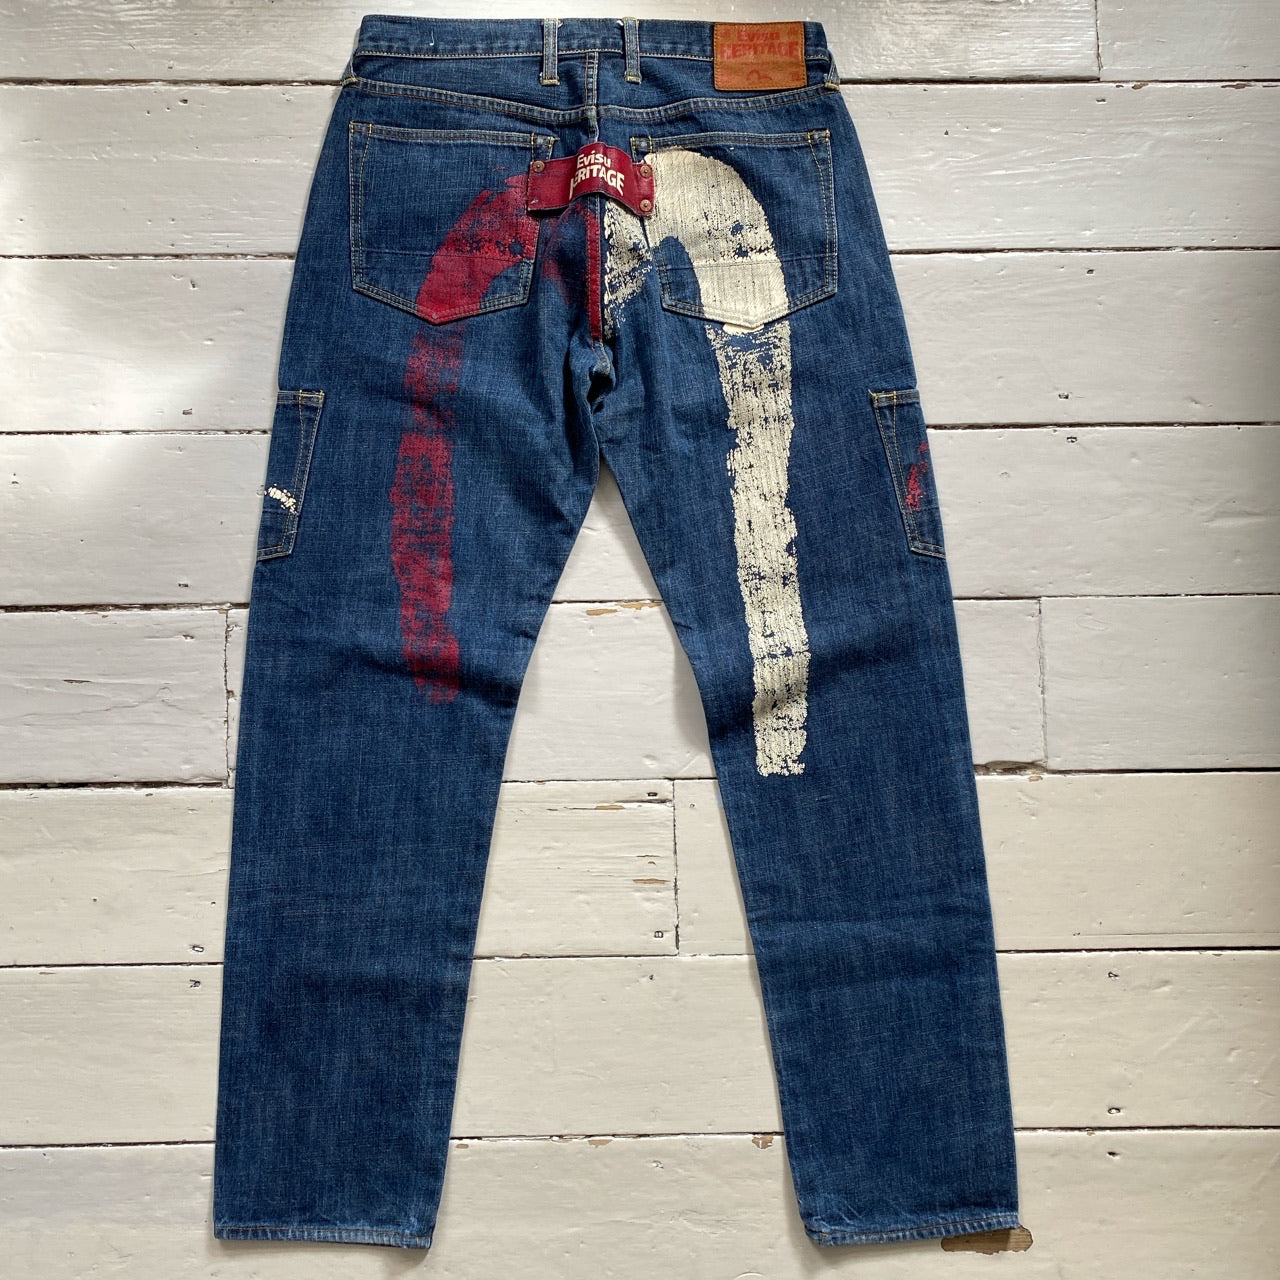 Evisu Vintage Daicock Jeans (34/33)